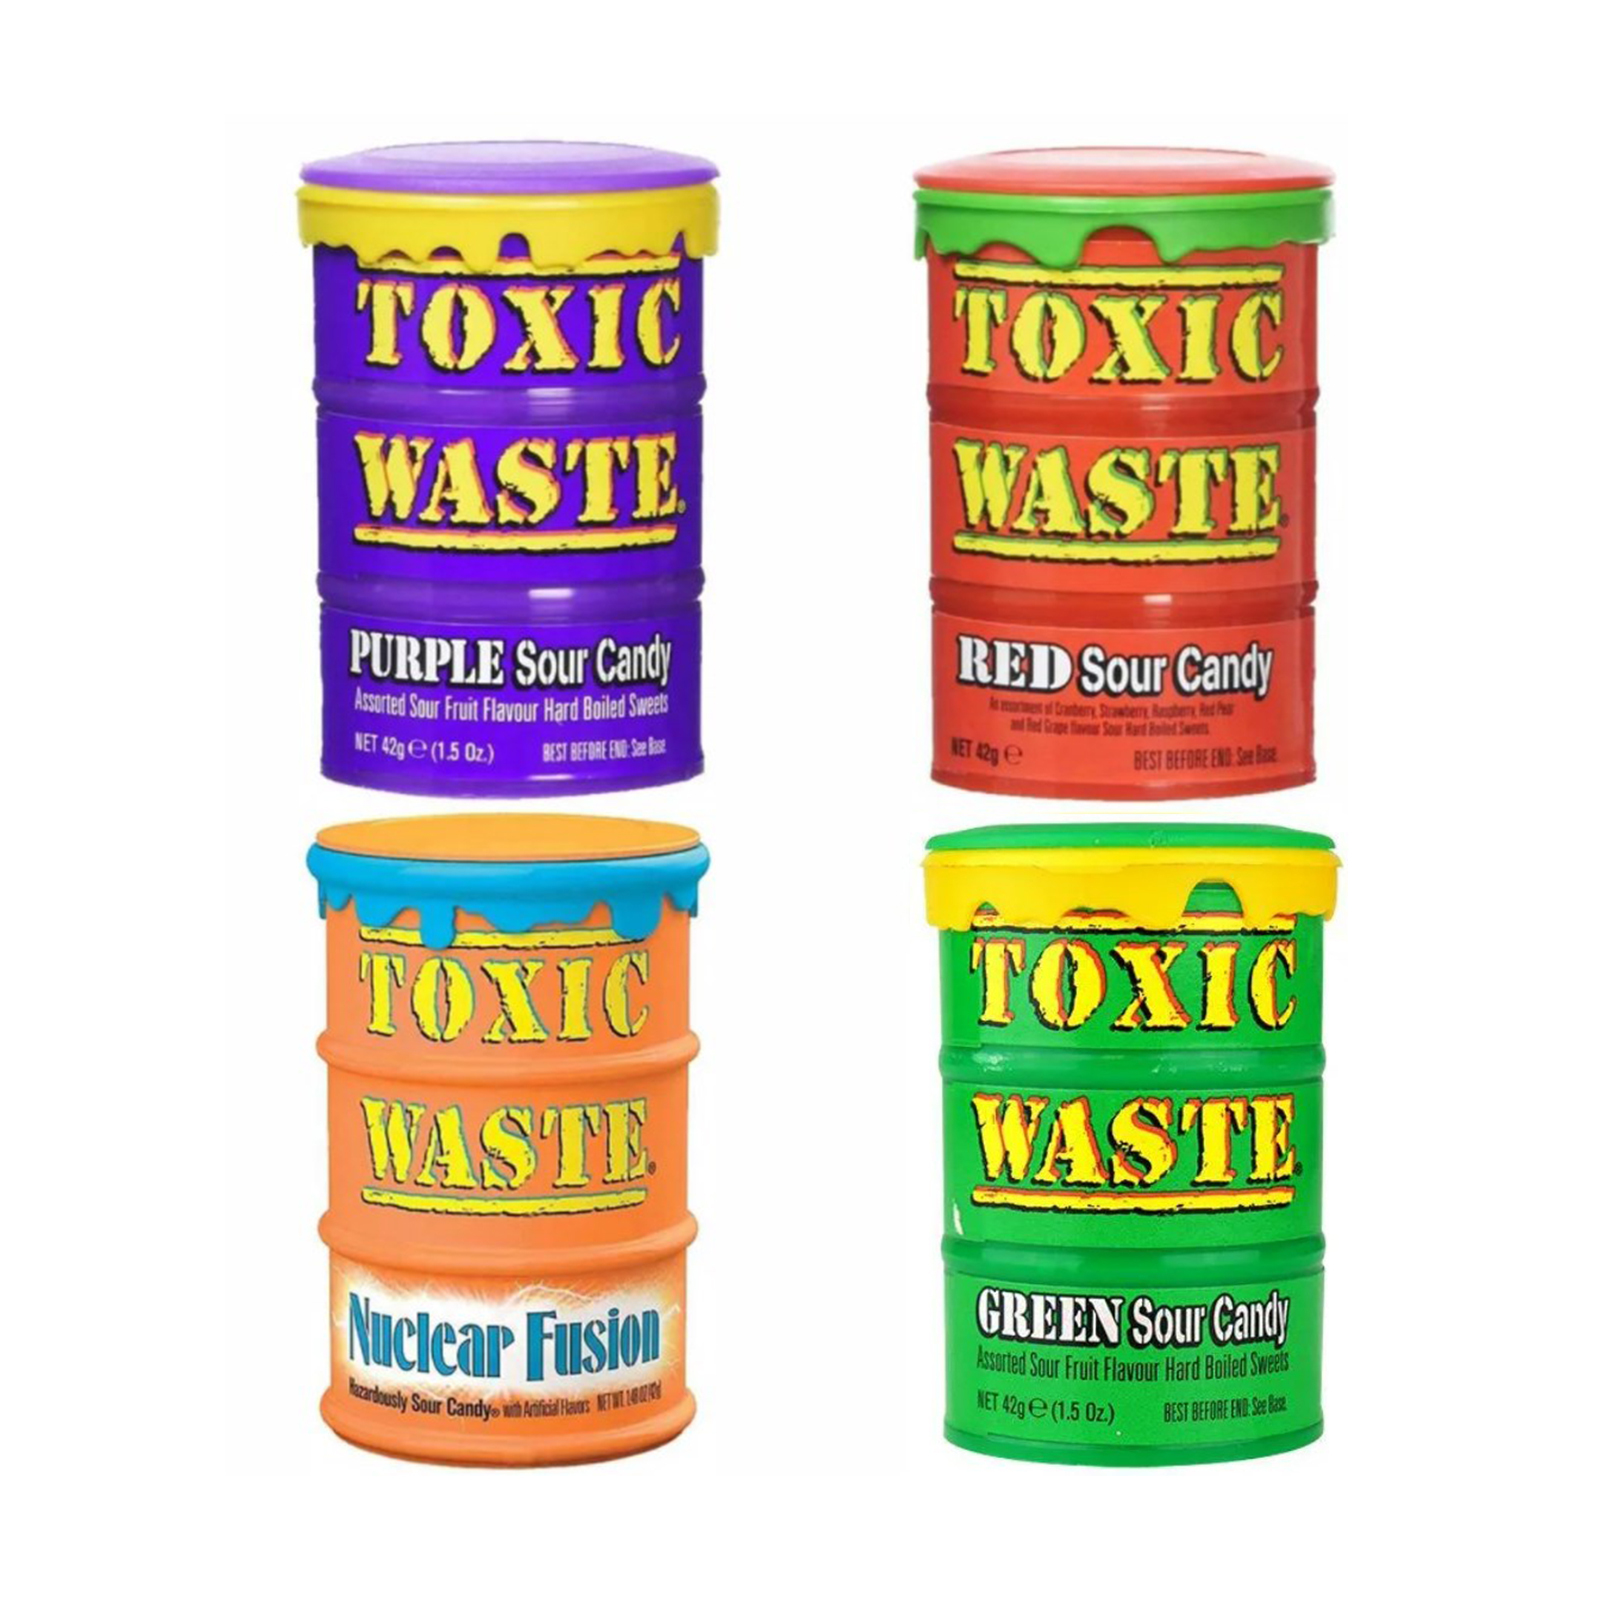 Токсик час. Леденцы Toxic waste. Конфеты Токсик Вейст. Токсик Вейст вкусы. Кислые конфеты Toxic waste.